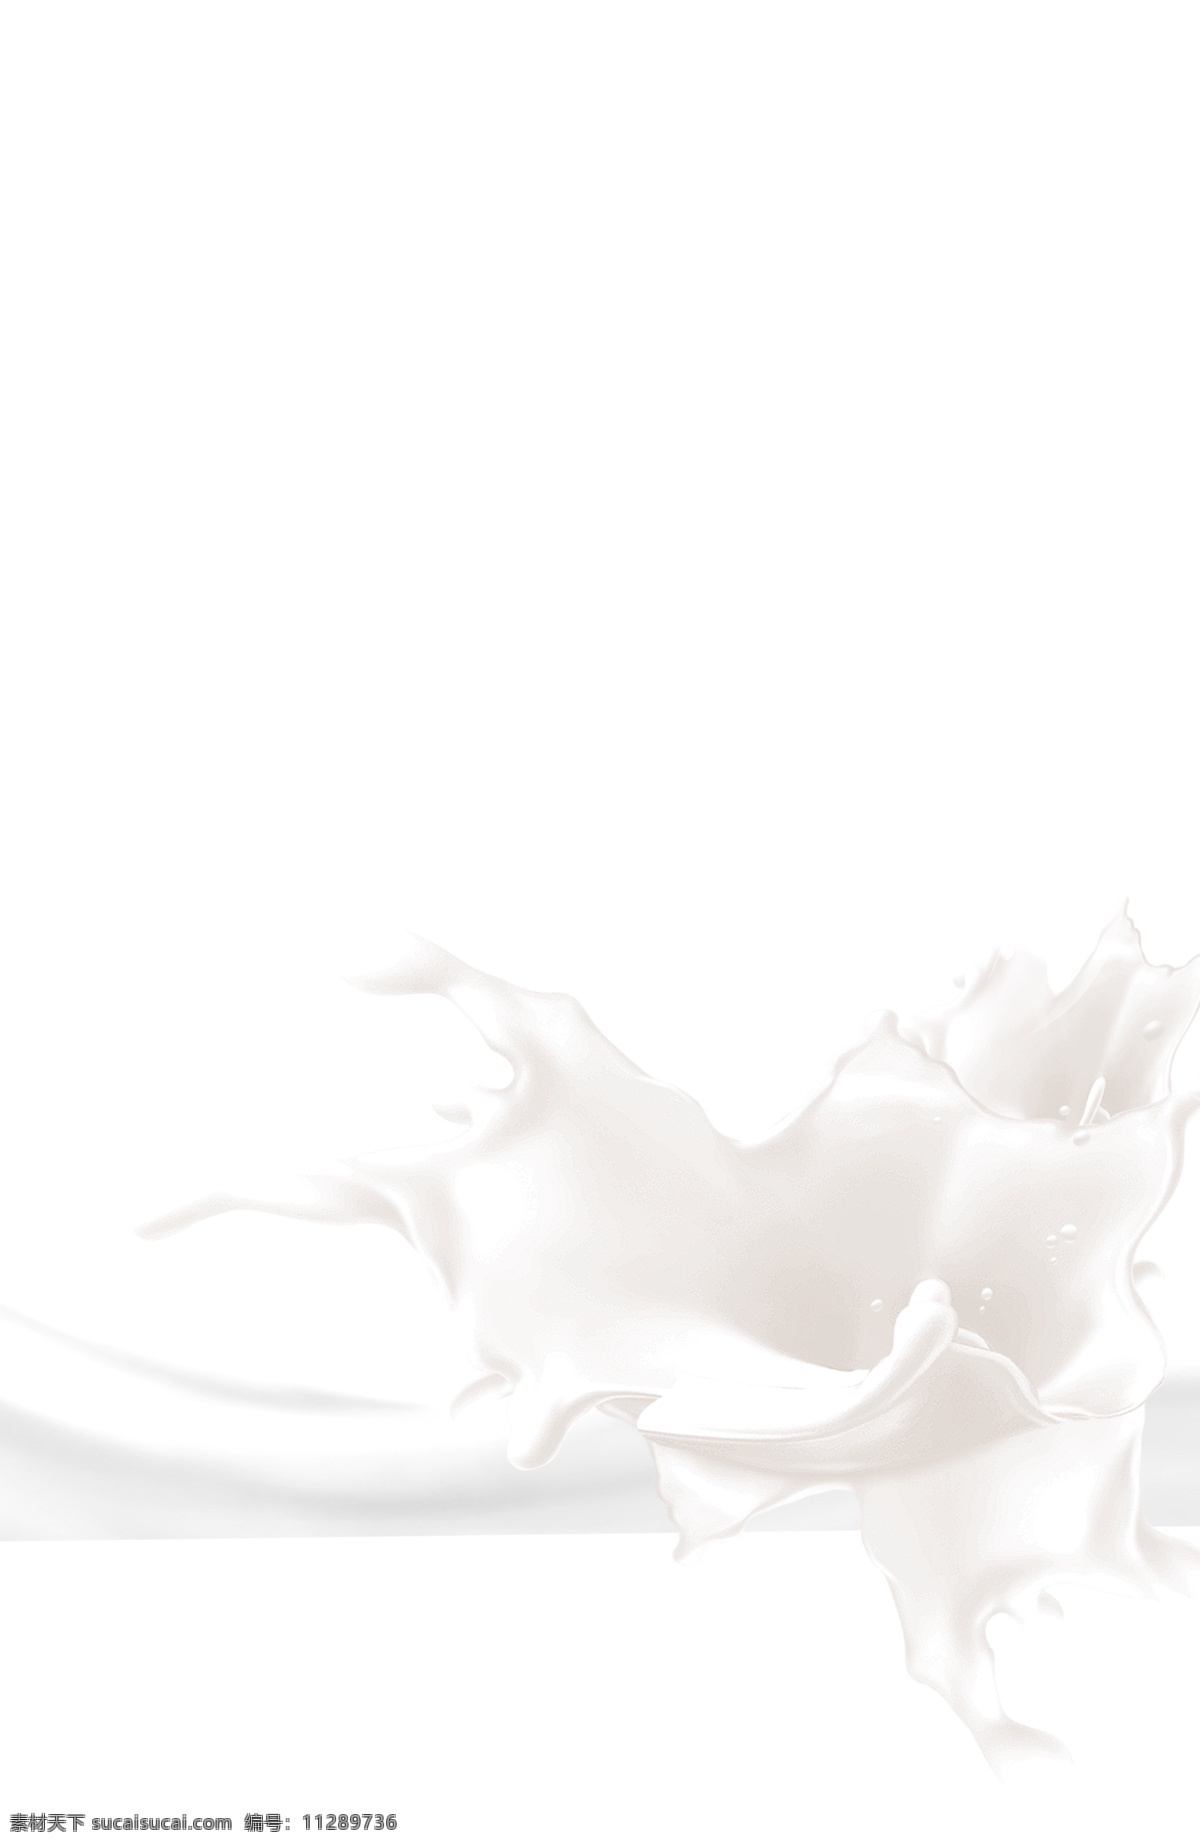 牛奶 飞溅牛奶 矢量素材图片 矢量素材 夏季 夏天 png素材 飞溅 水花 饮料 溅起的牛奶 元素系列